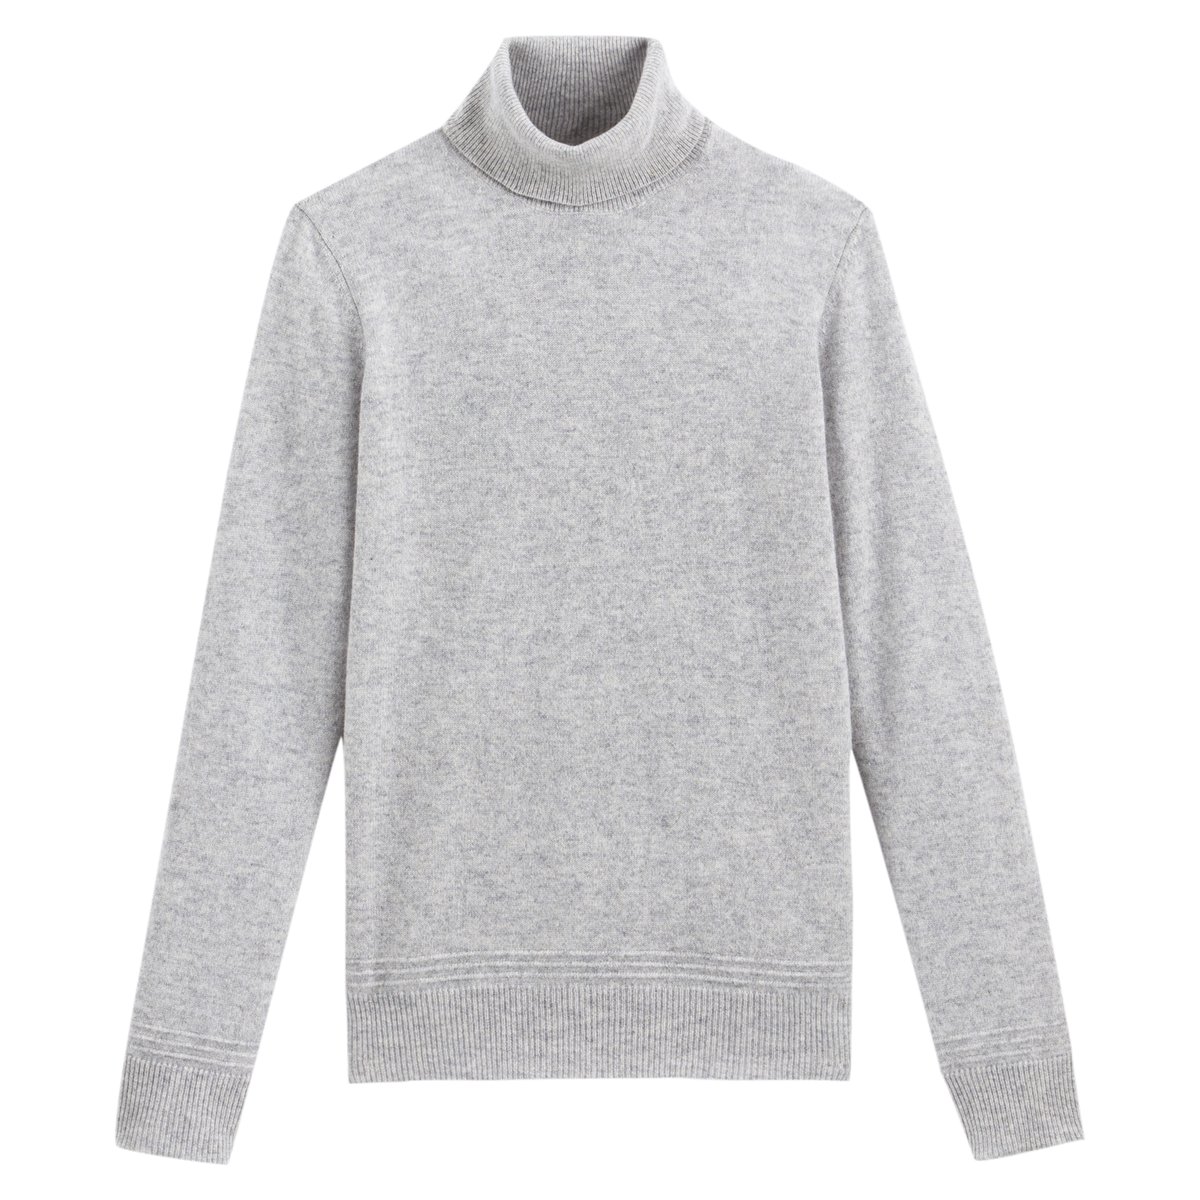 Пуловер La Redoute С отворачивающимся воротником  кашемир S серый, размер S - фото 5